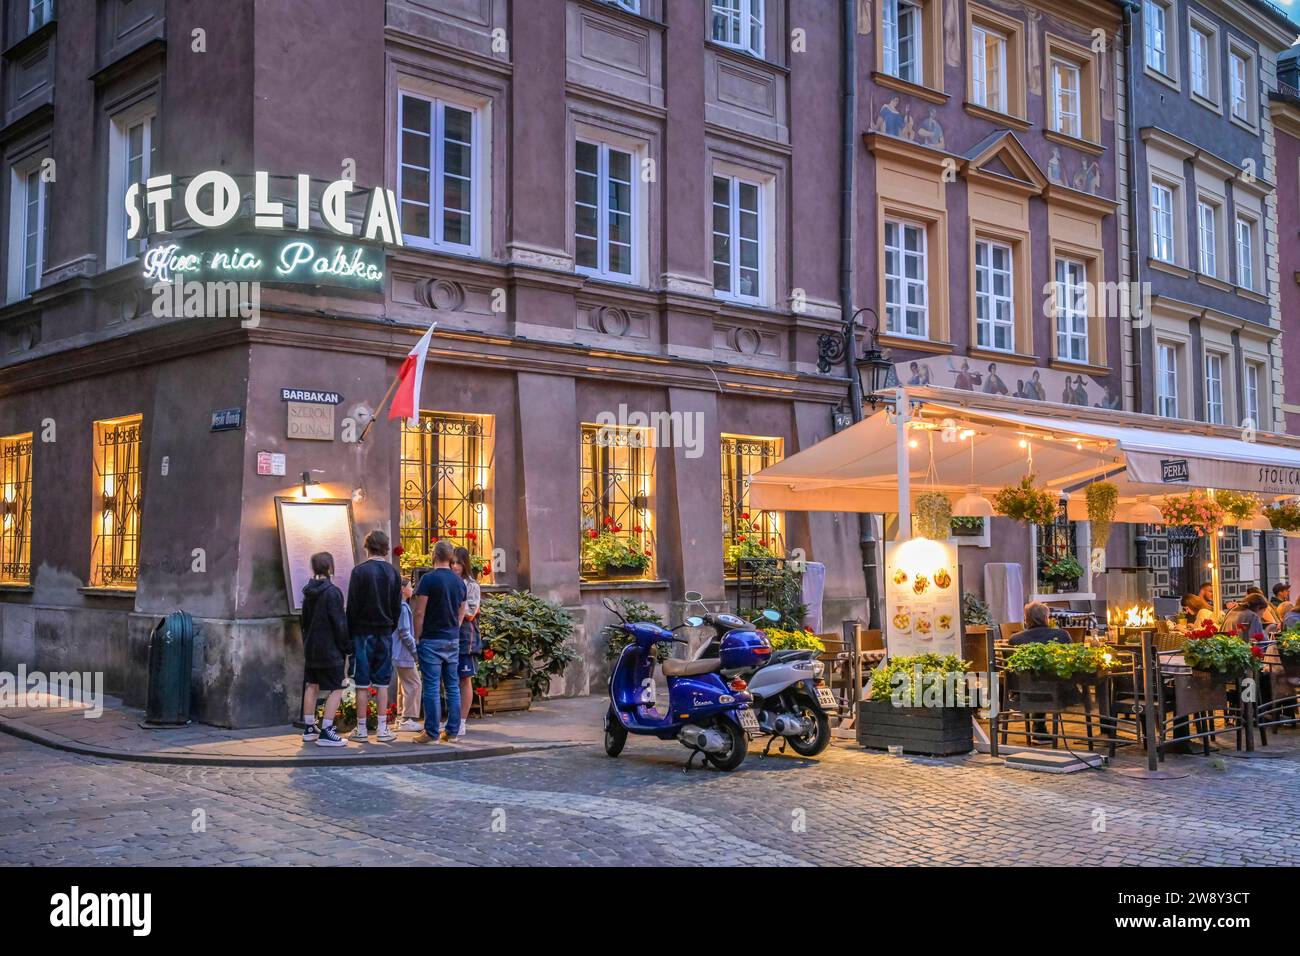 Restaurant Stolica, Szeroki Dunaj, Stare Miasto Old Town, Warsaw, Mazowieckie Voivodeship, Poland Stock Photo